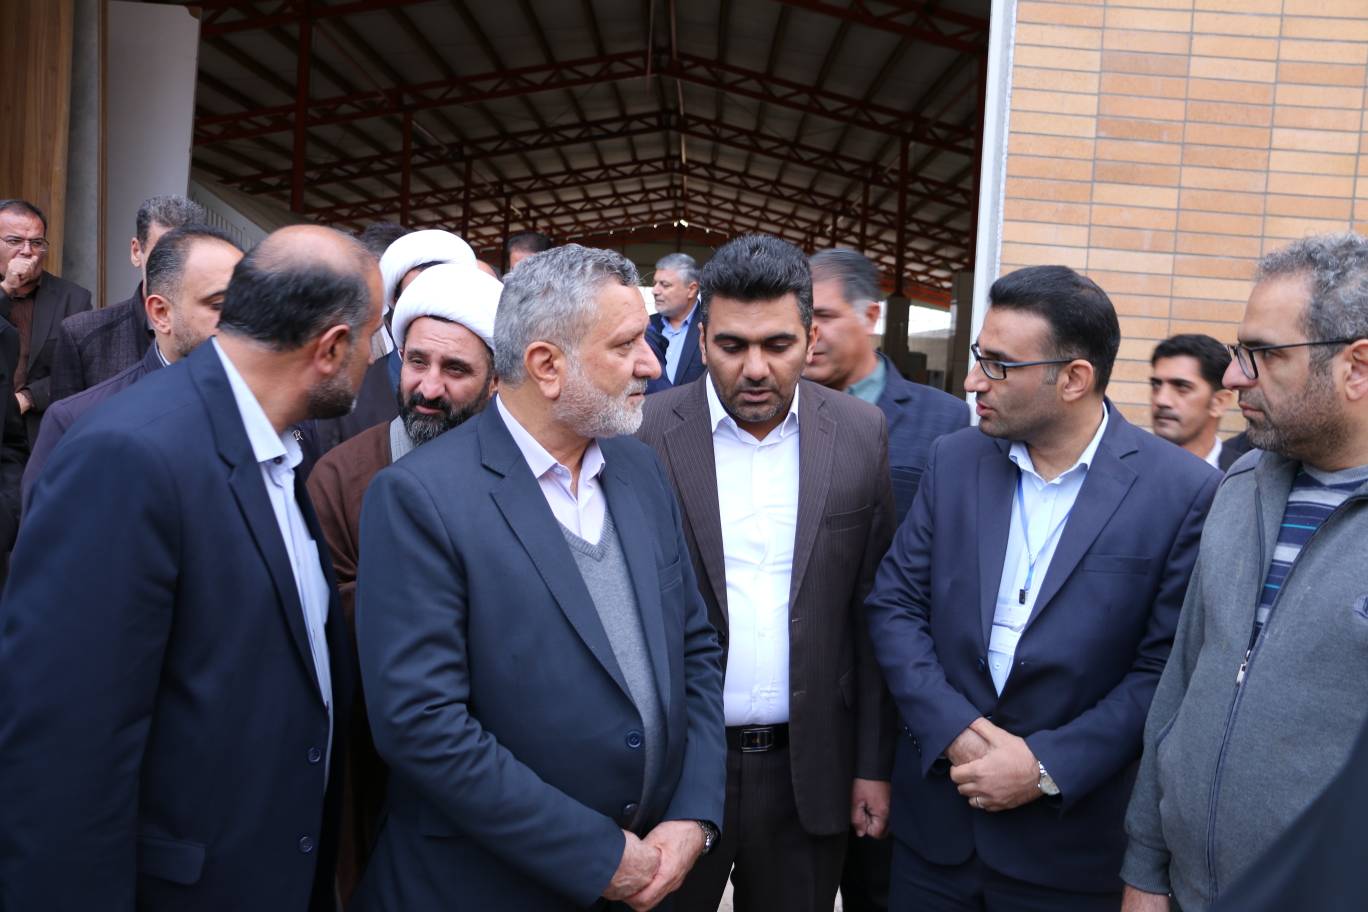 افتتاح کارخانه تولید مصنوعات چوبی و MDF با حضور وزیر کار در چهارمحال و بختیاری